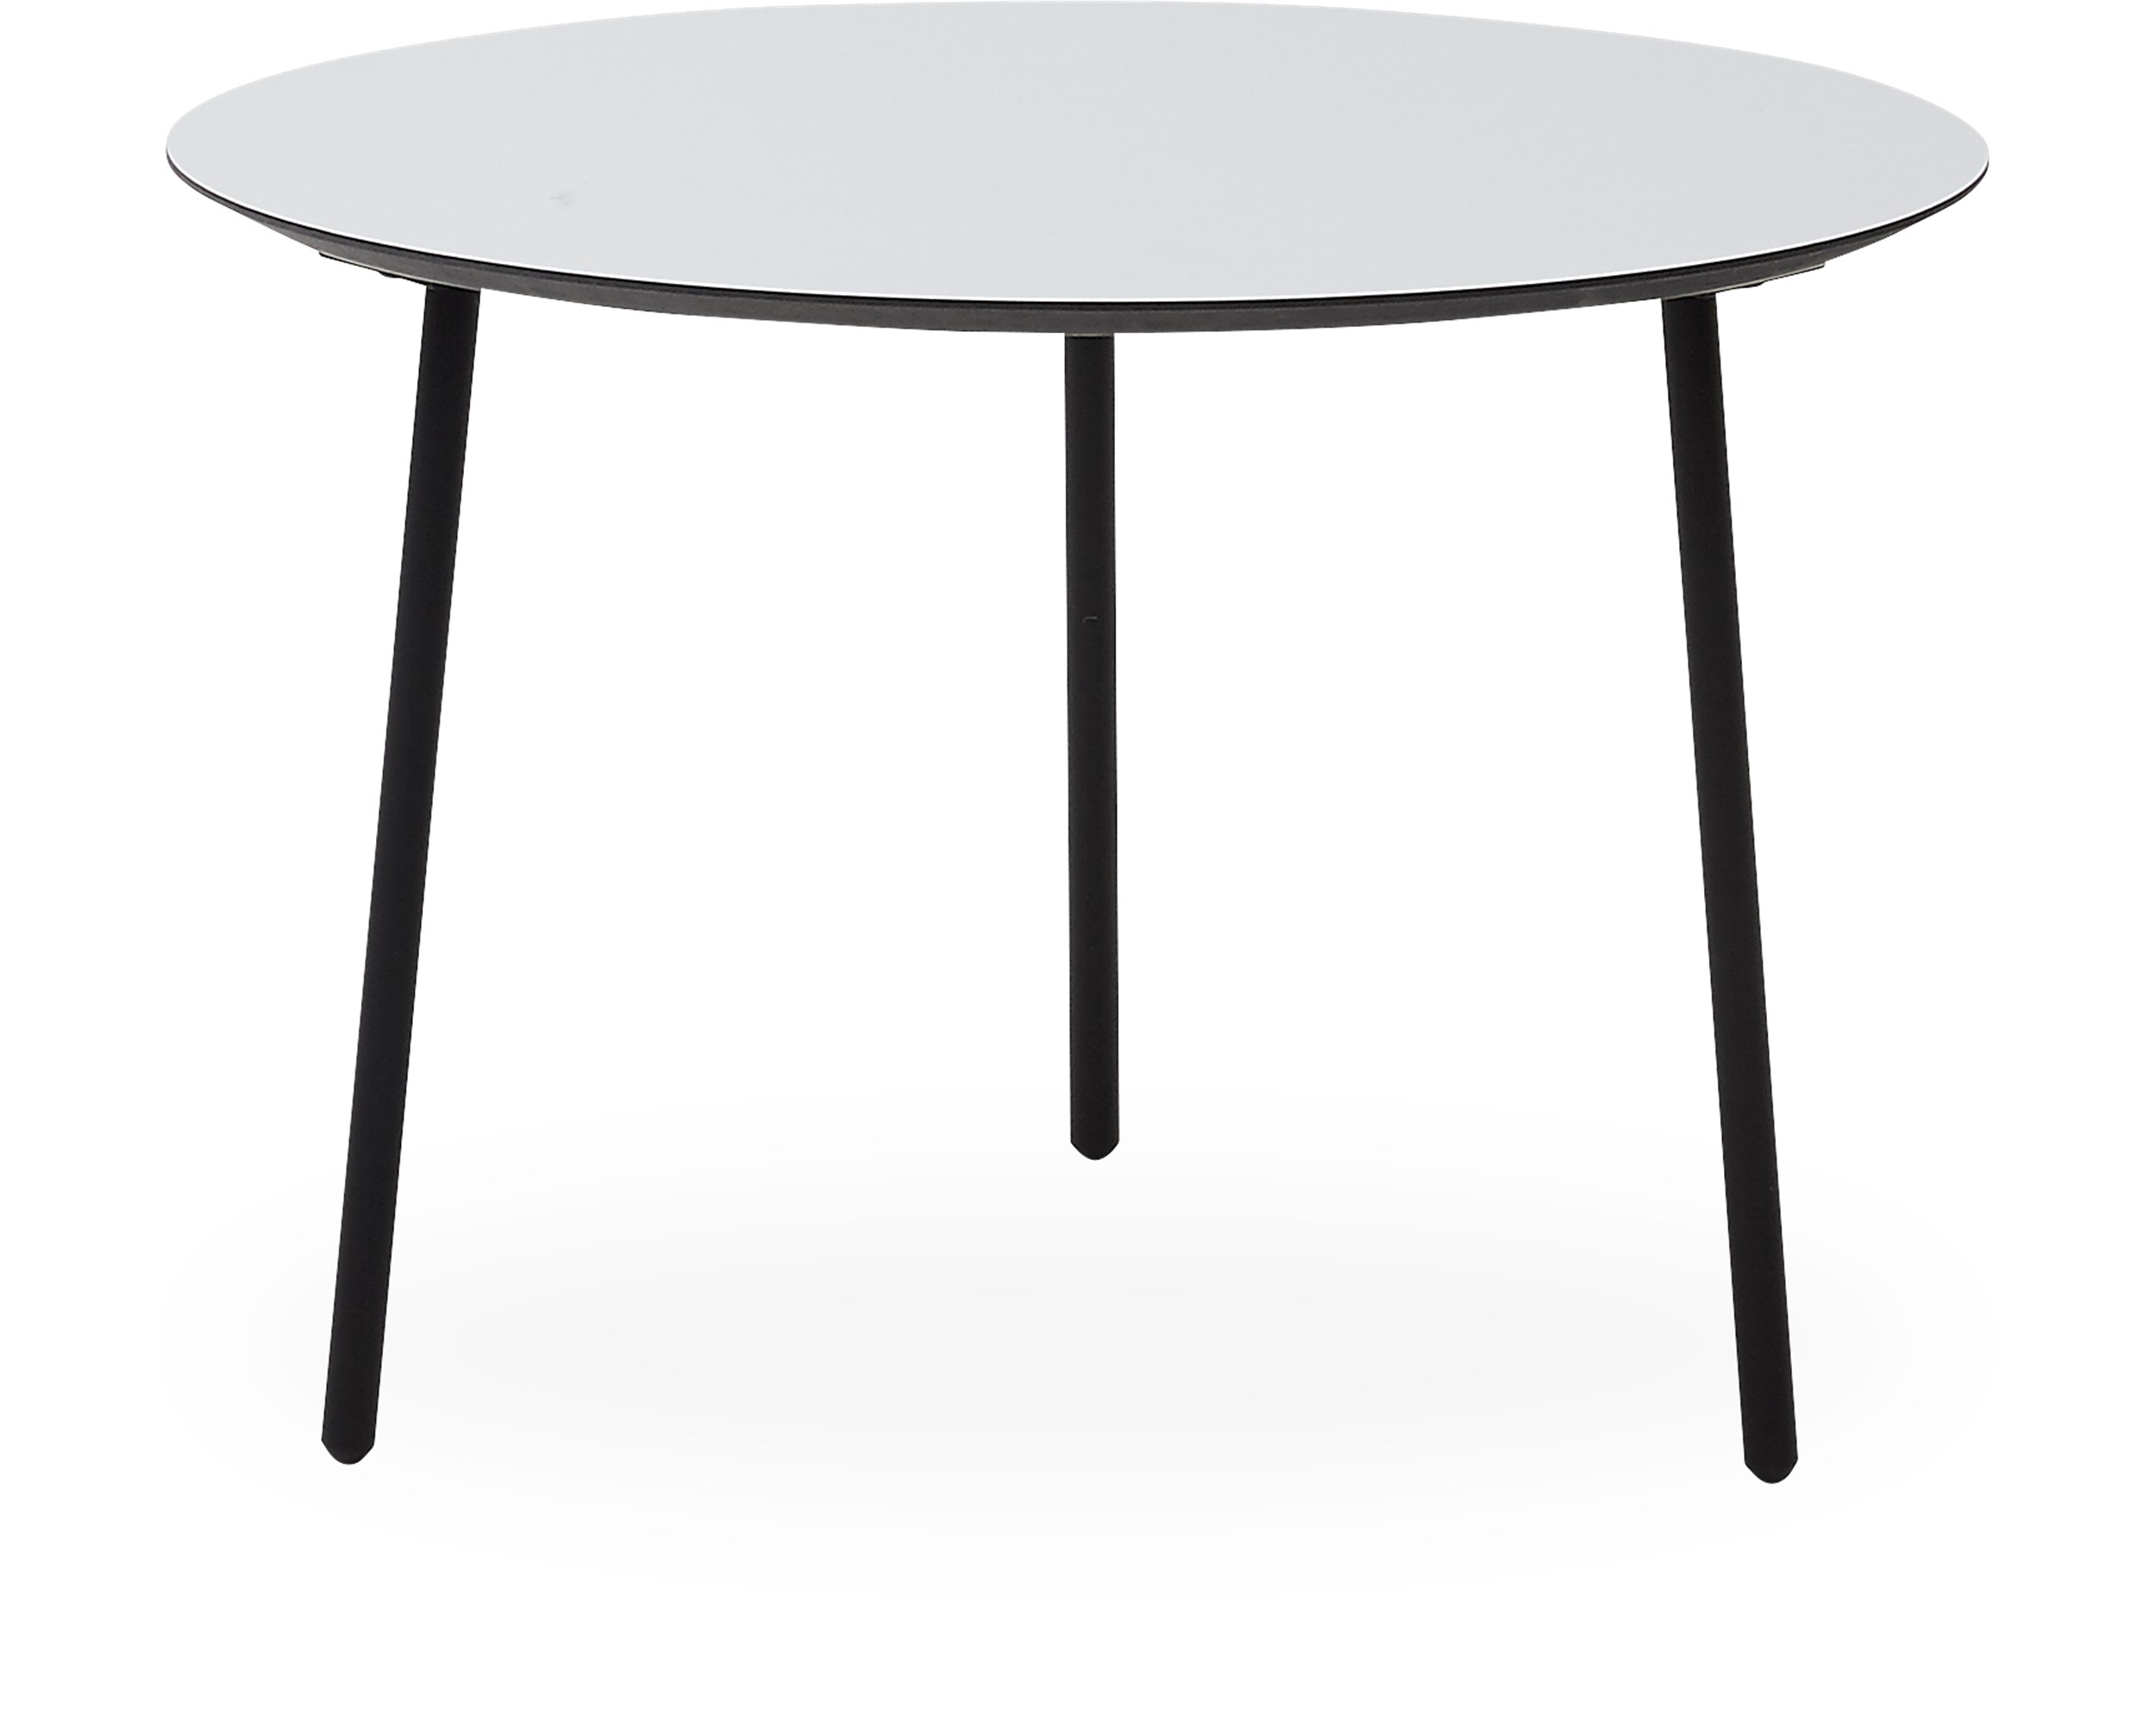 Spark Sofabord 65 x 45 x 55 cm - Laminat lysegrå, sort kant MDF og ben i sortlakeret metal.